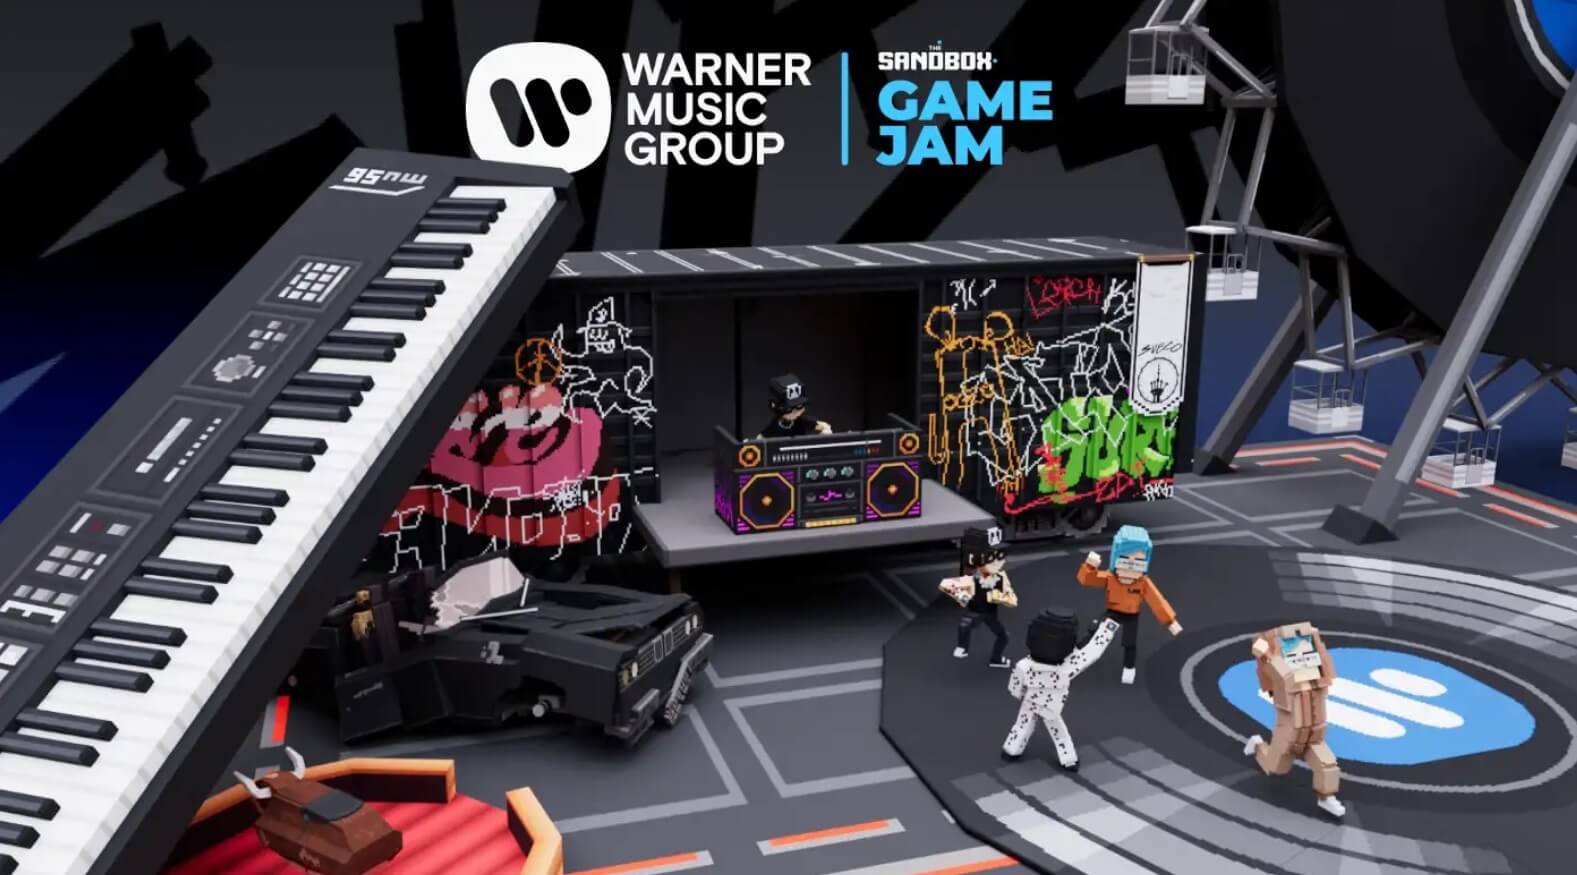 The Sandbox Warner Music Group Game Jam